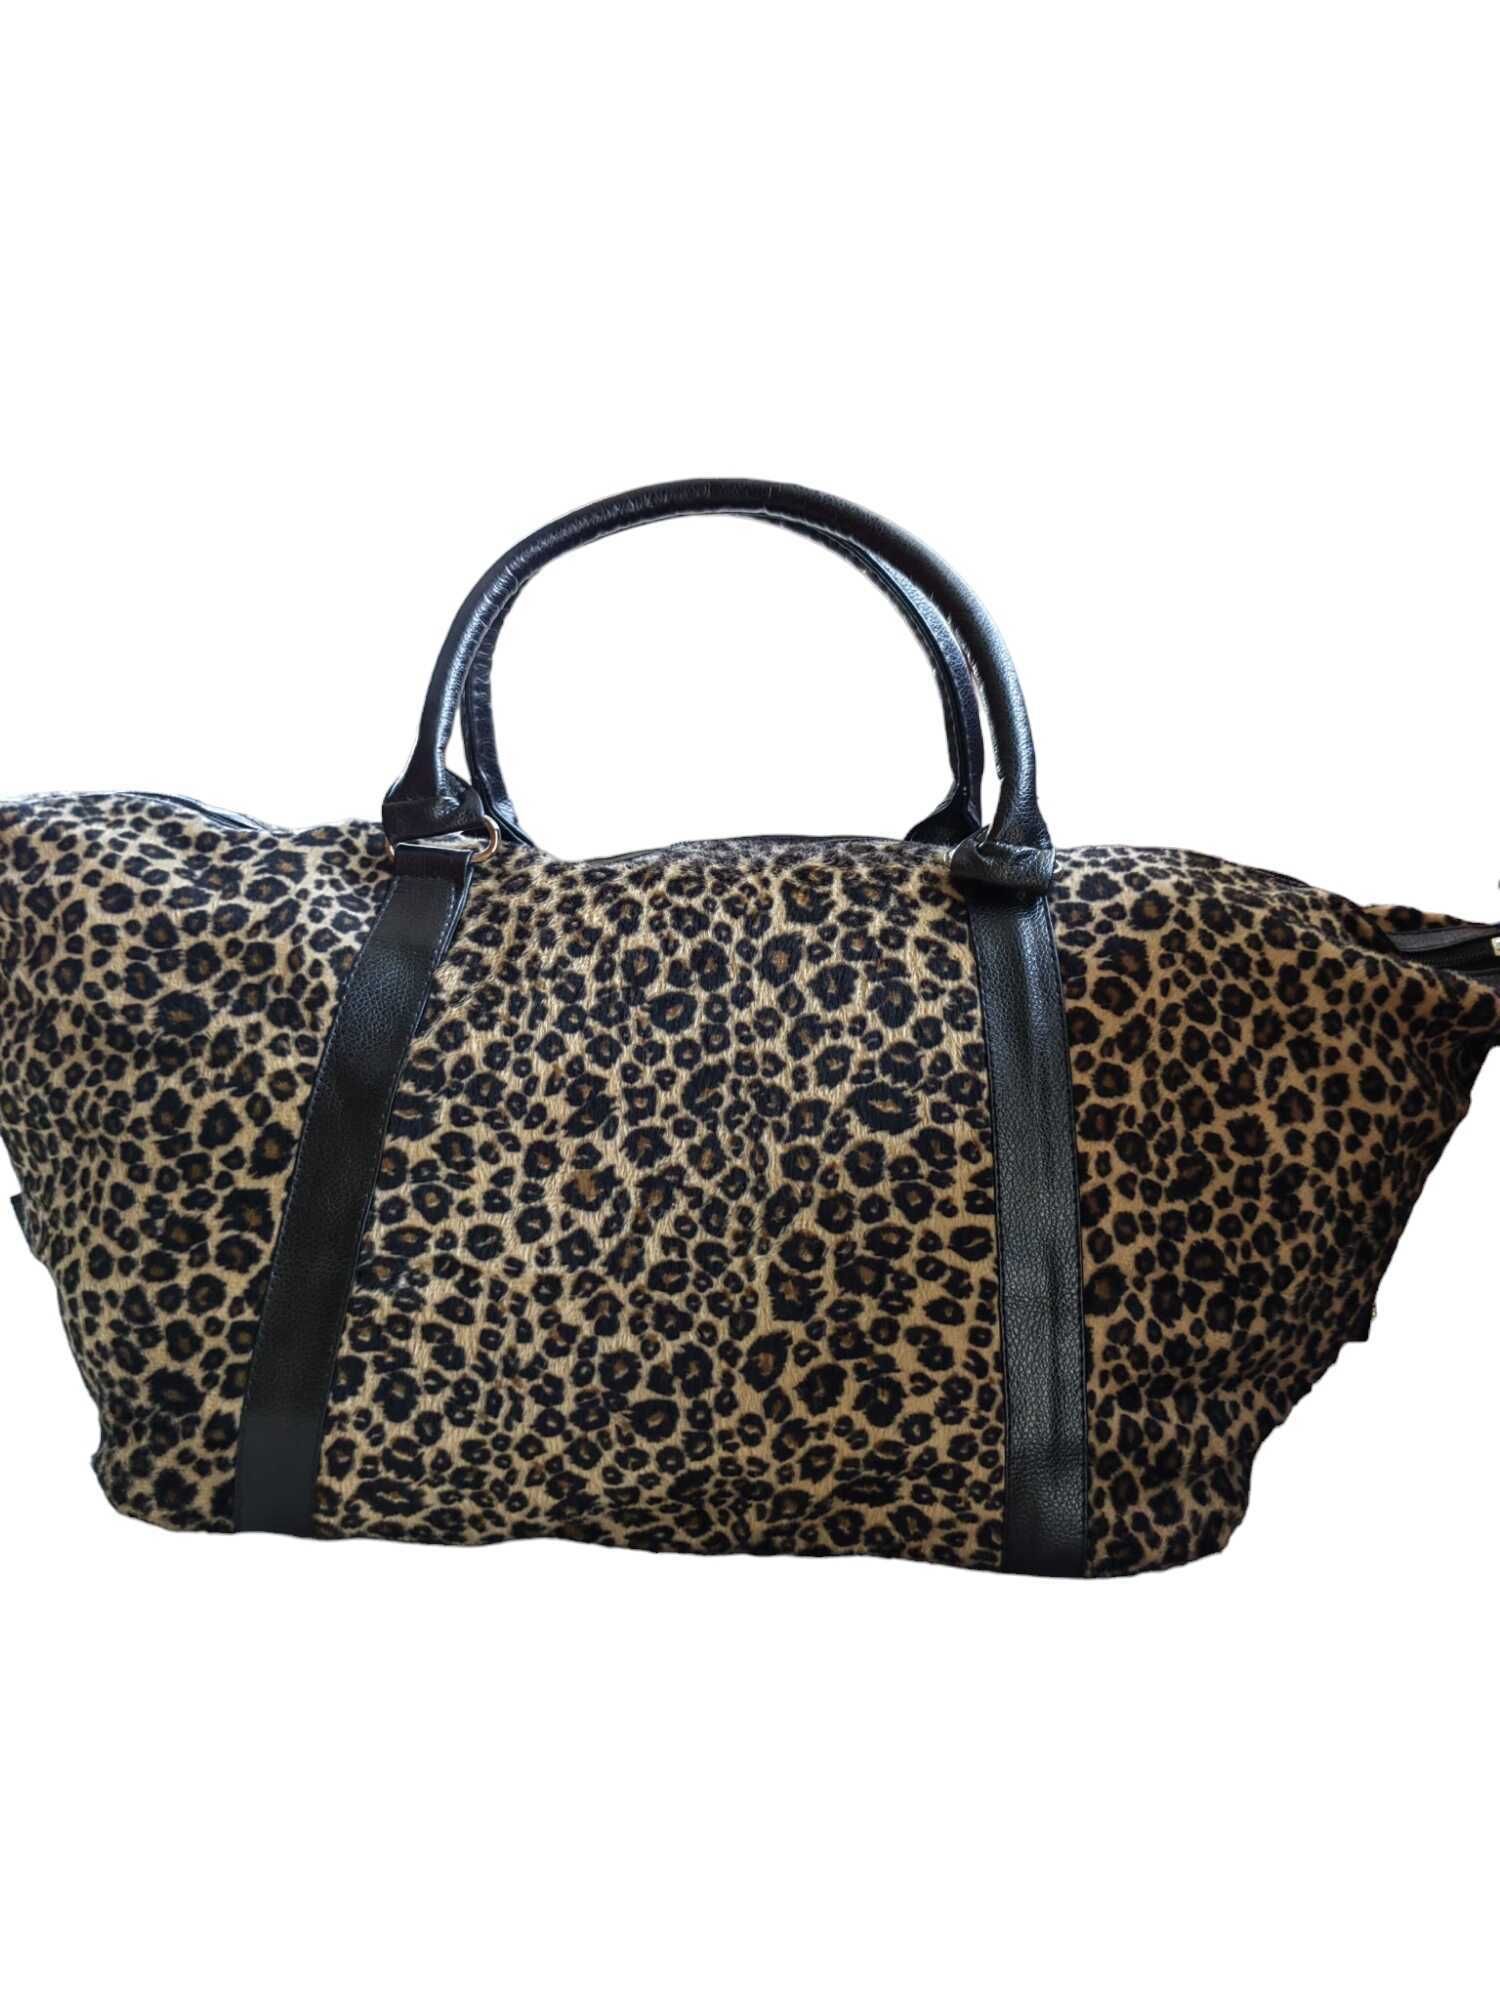 Дамска чанта със животинска щампа, 61х28х17 см